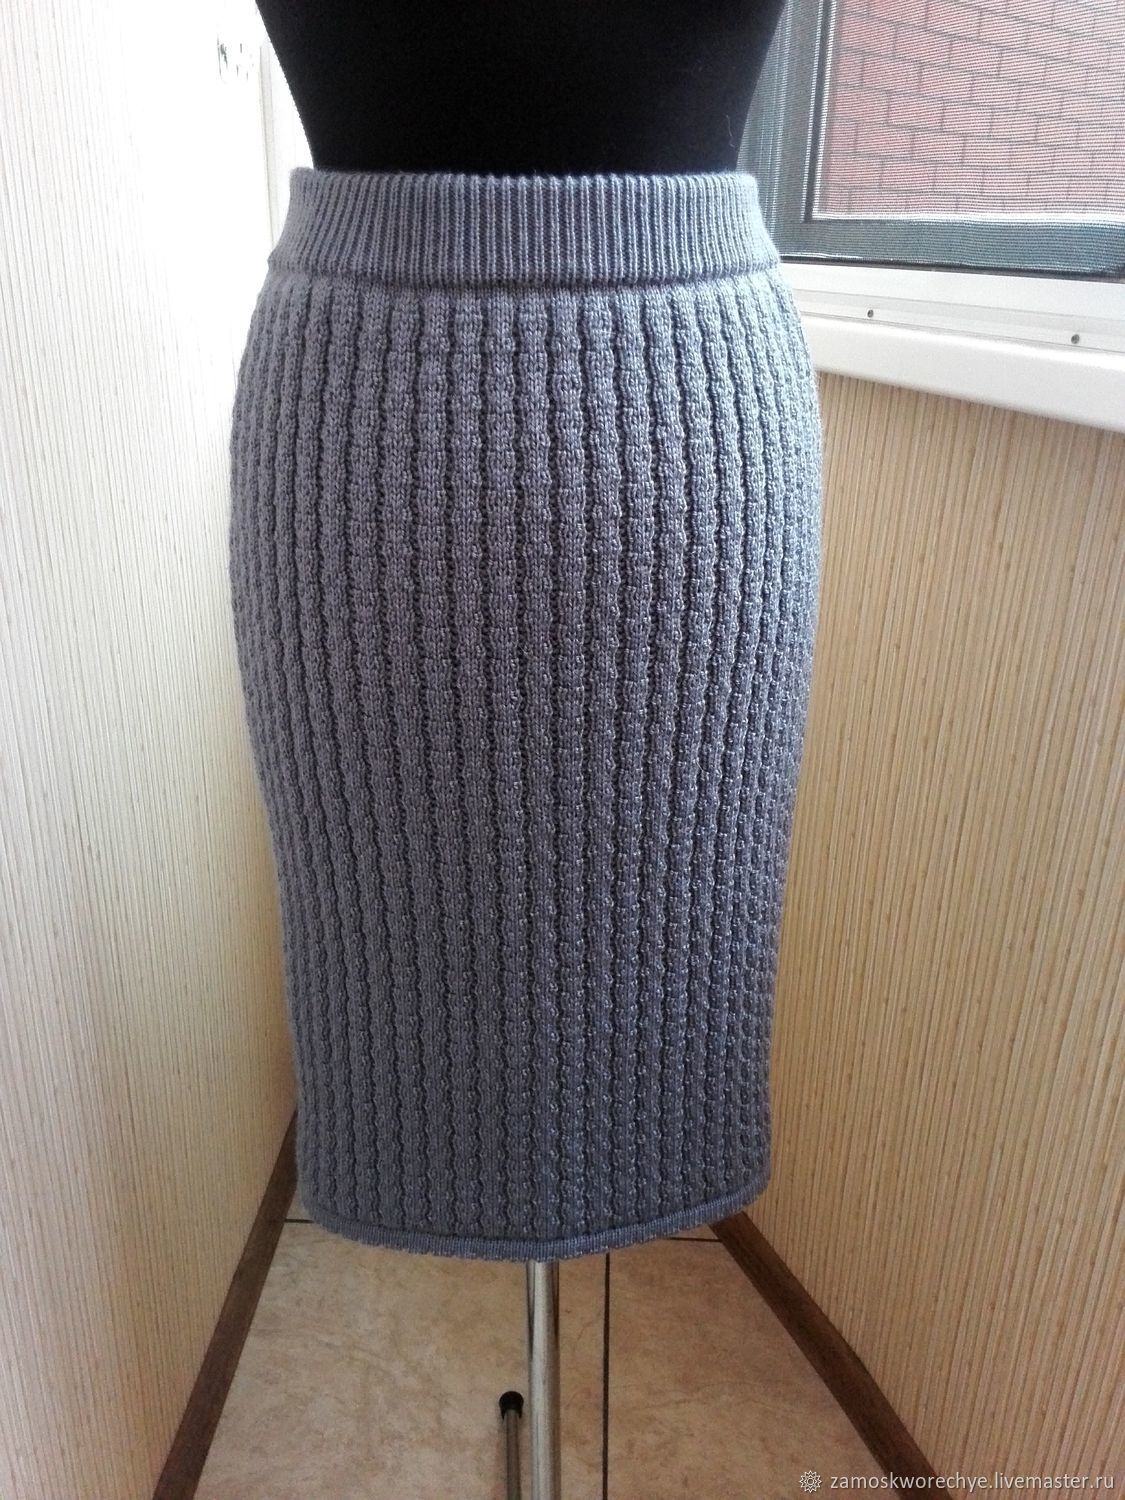 «Эх, юбка-юбочка!» — 4 ажурные модели спицами, с описанием и схемами